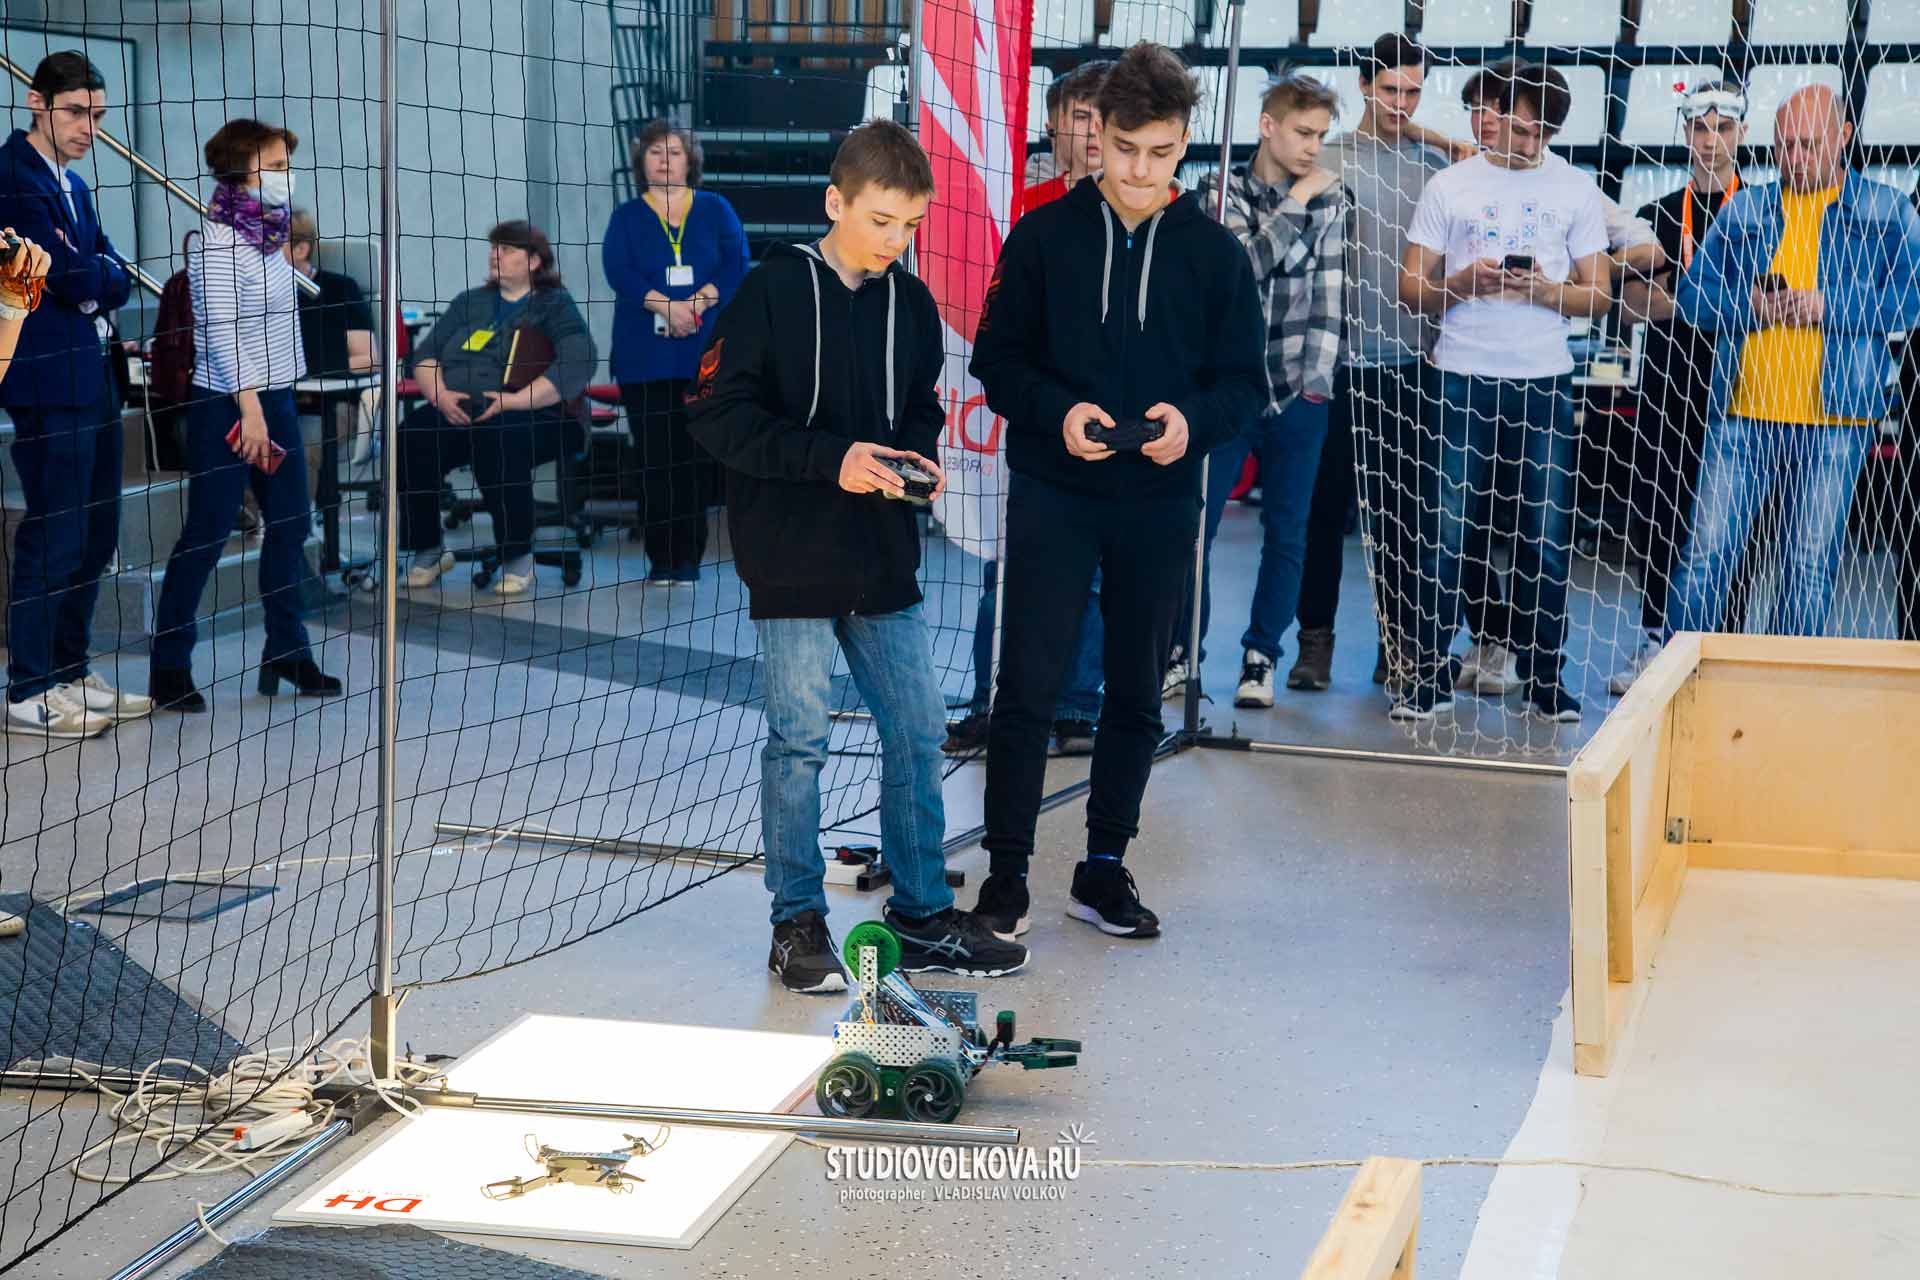 Открытые соревнования по беспилотным системам «Битва дронов». фотограф Владислав ВОЛКОВ